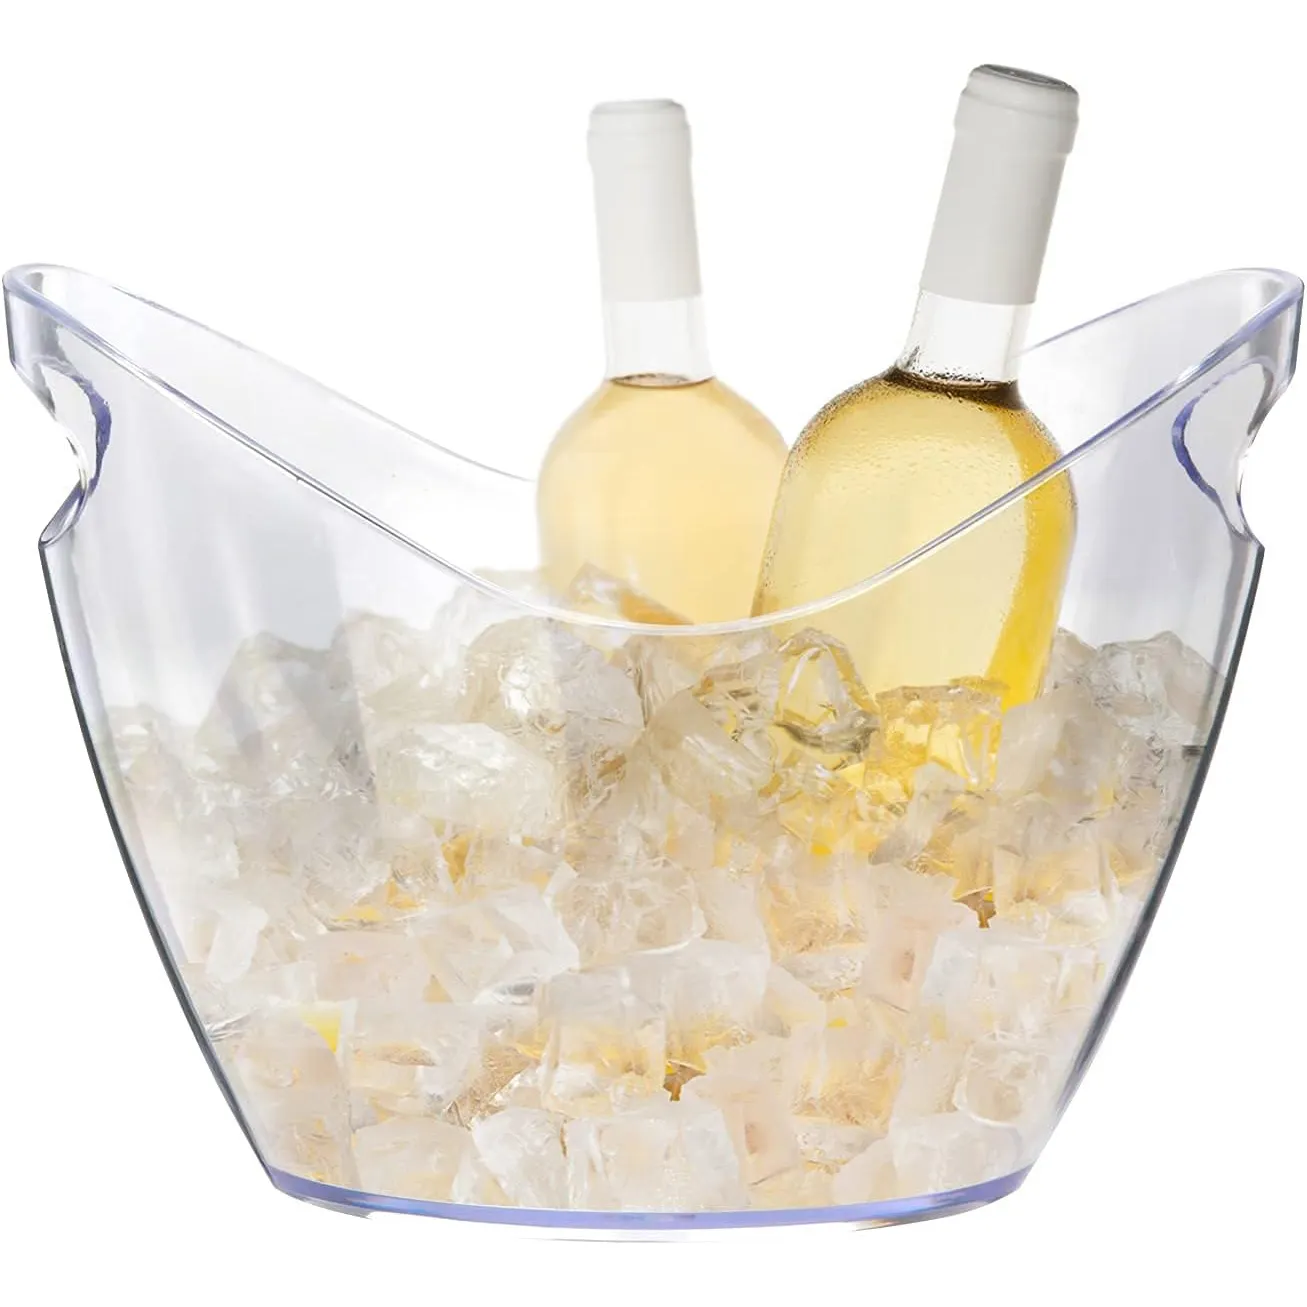 Lebensmittel qualität 4 Liter klarer Acryl-Eis kübel Wein kübel Kunststoff-Getränke wanne für Getränke Champagner-Bierflaschen-Kühler